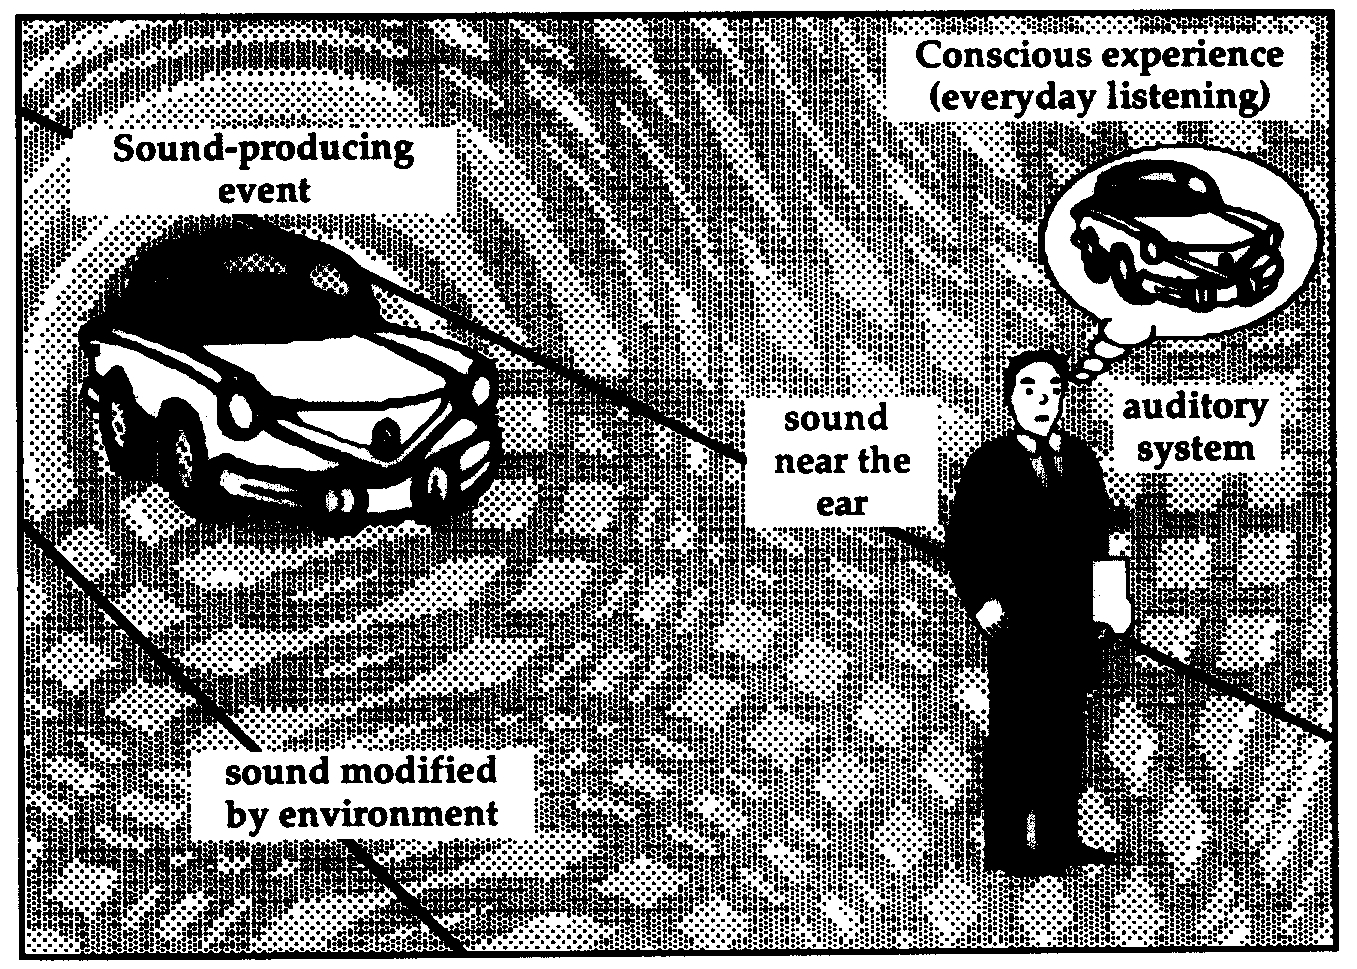 L'esempio dell'automobile come sorgente di onde sonore; alcune onde
raggiungono l'orecchio umano immutate, altre invece vengono modificate
dall'ambiente.